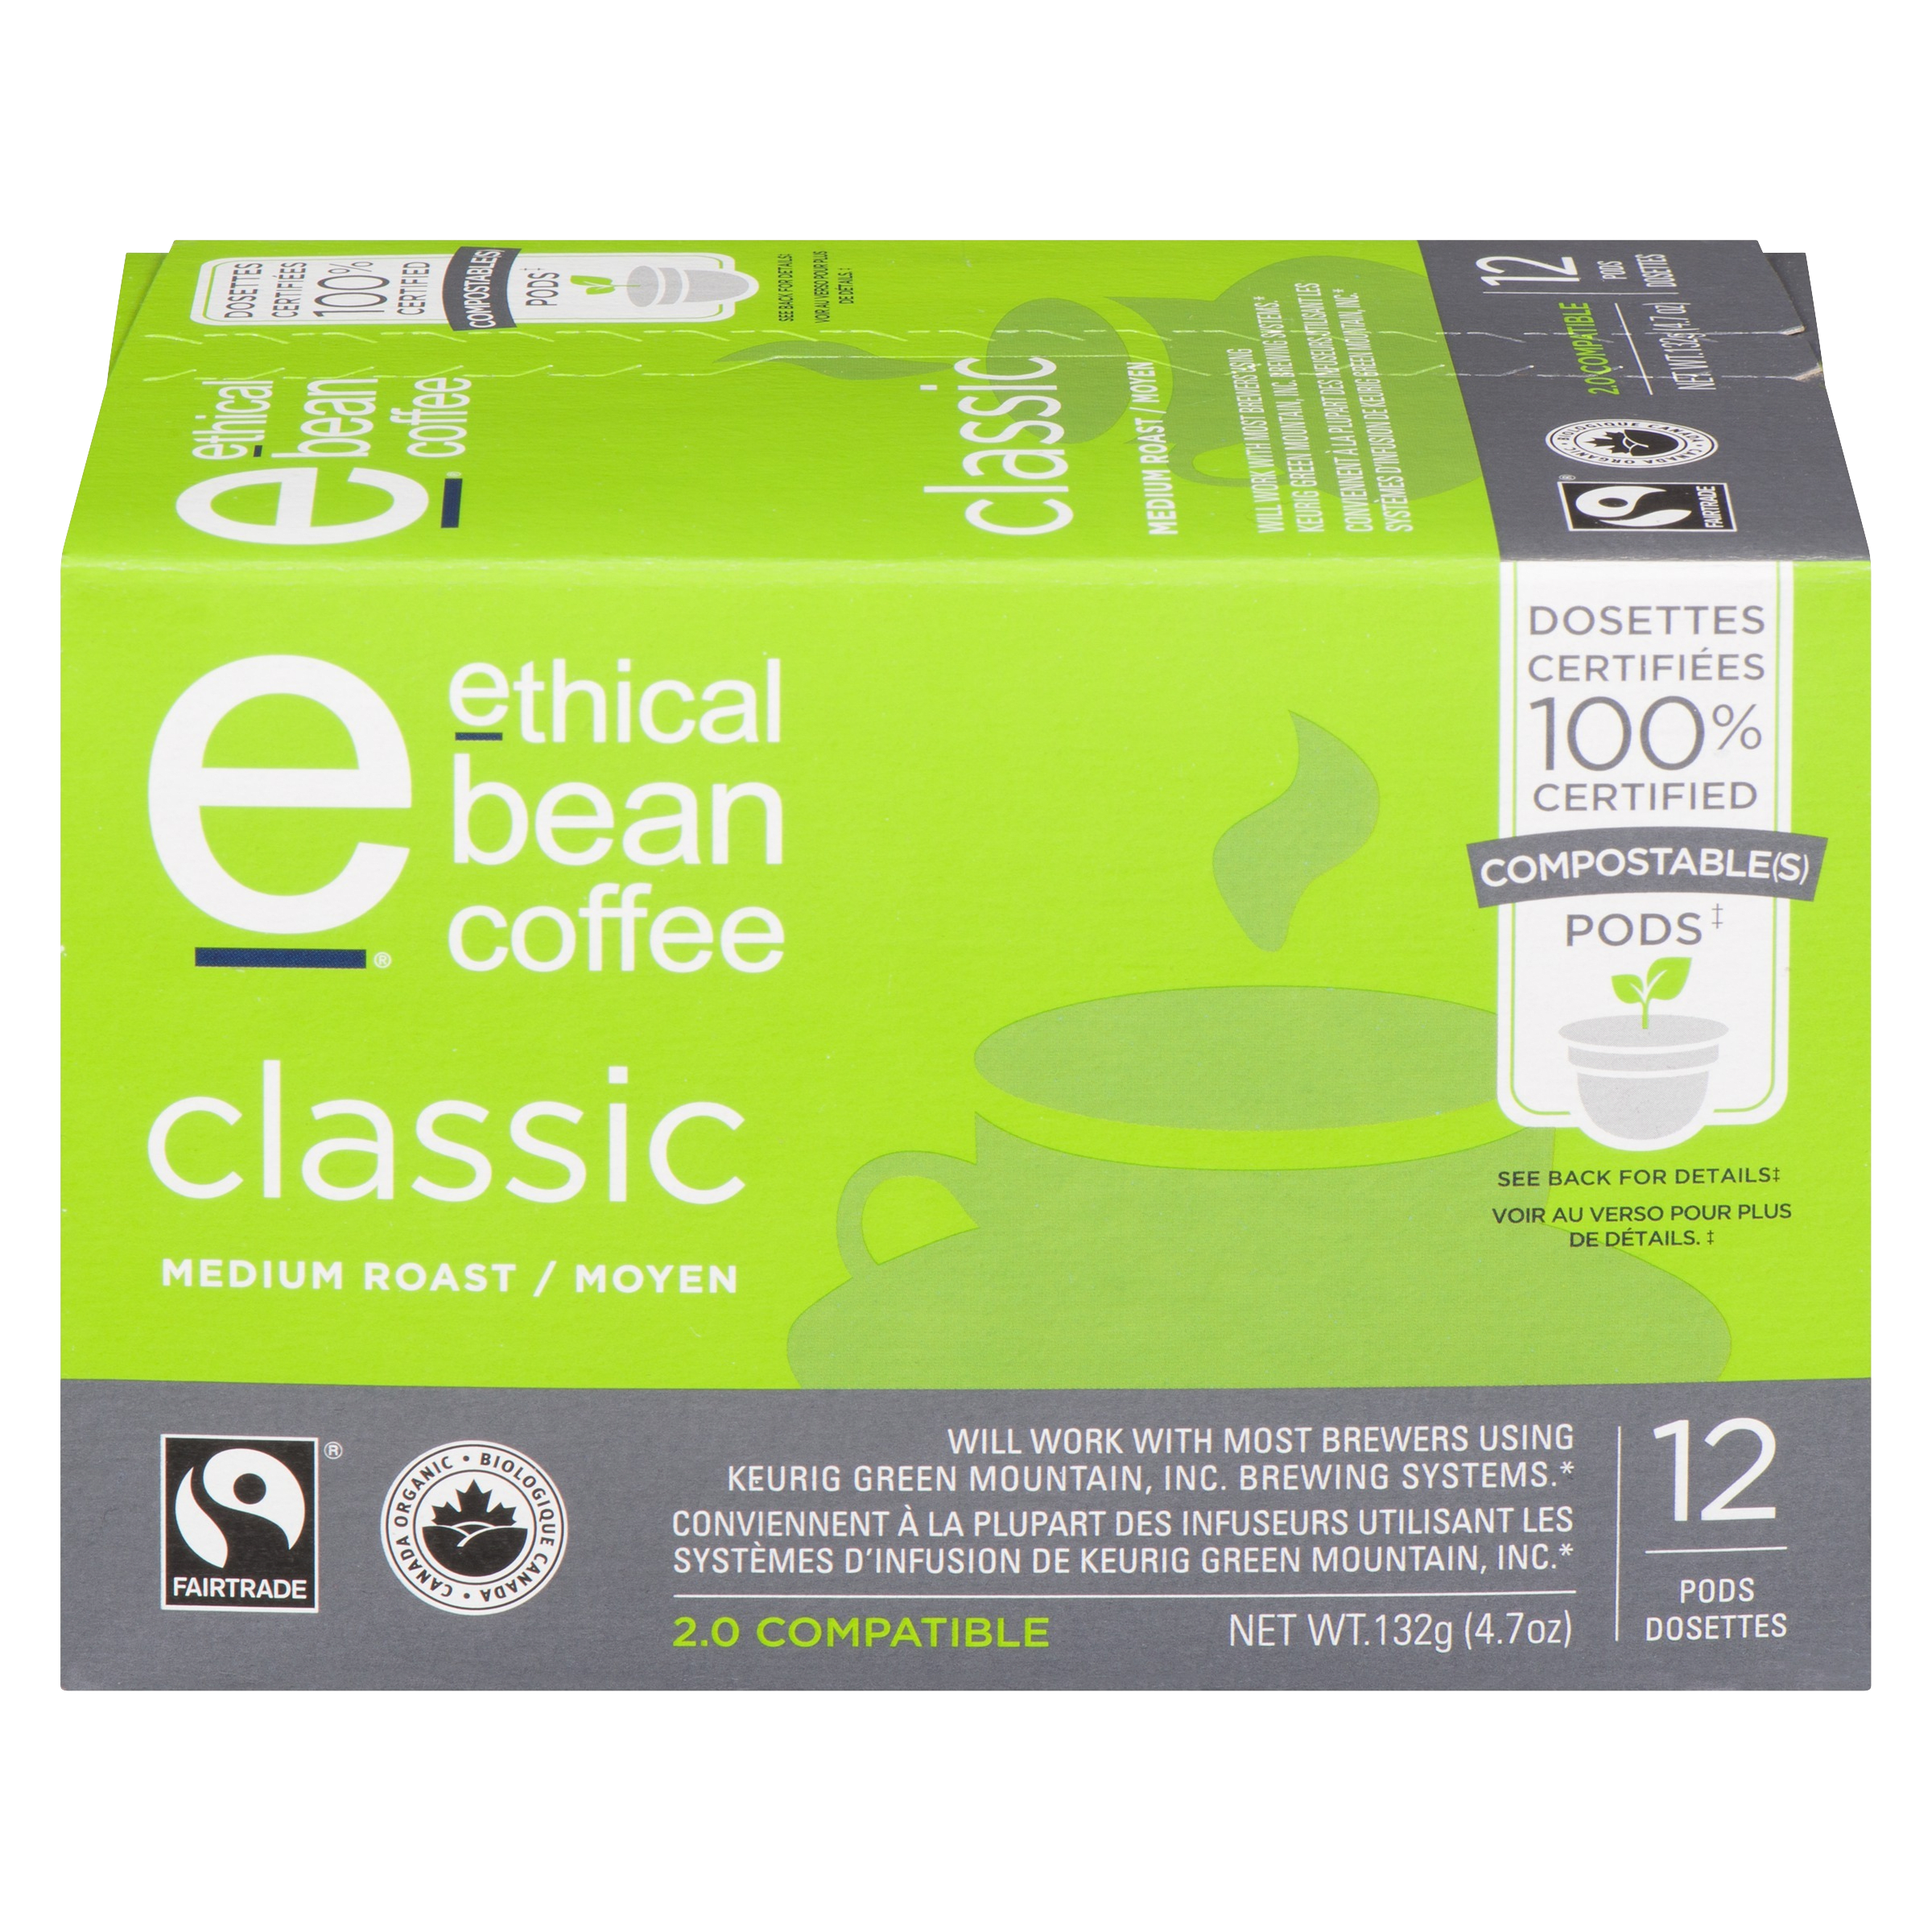 Dosettes de café classique torréfaction moyenne compostables à 100 %